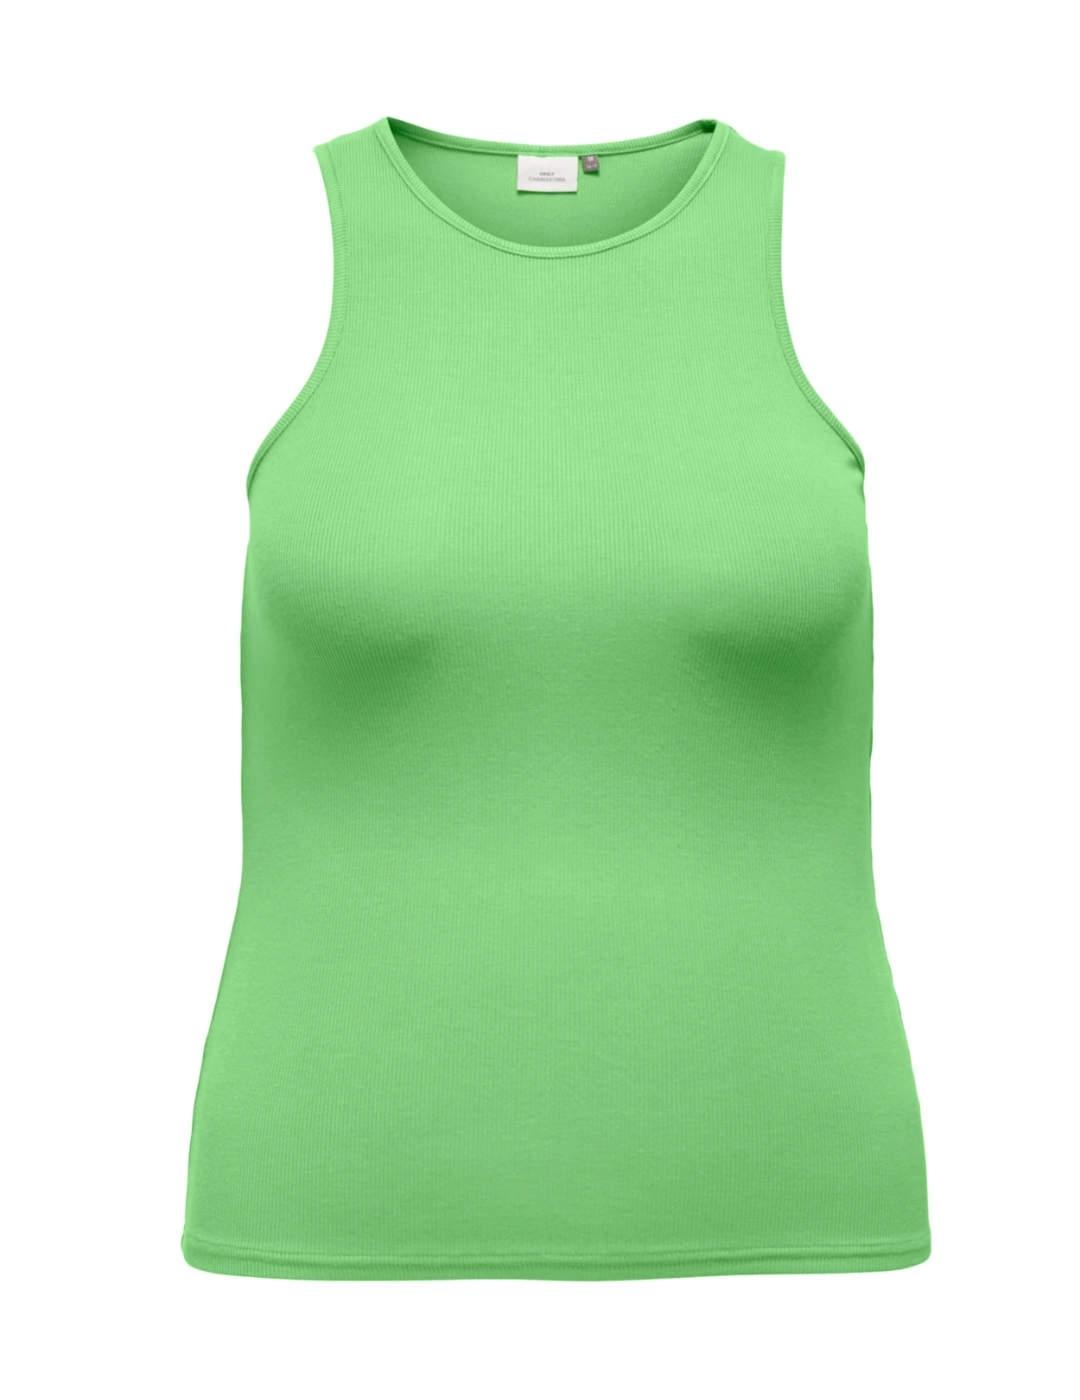 Camiseta Only Carmakoma verde de tirantes para mujer